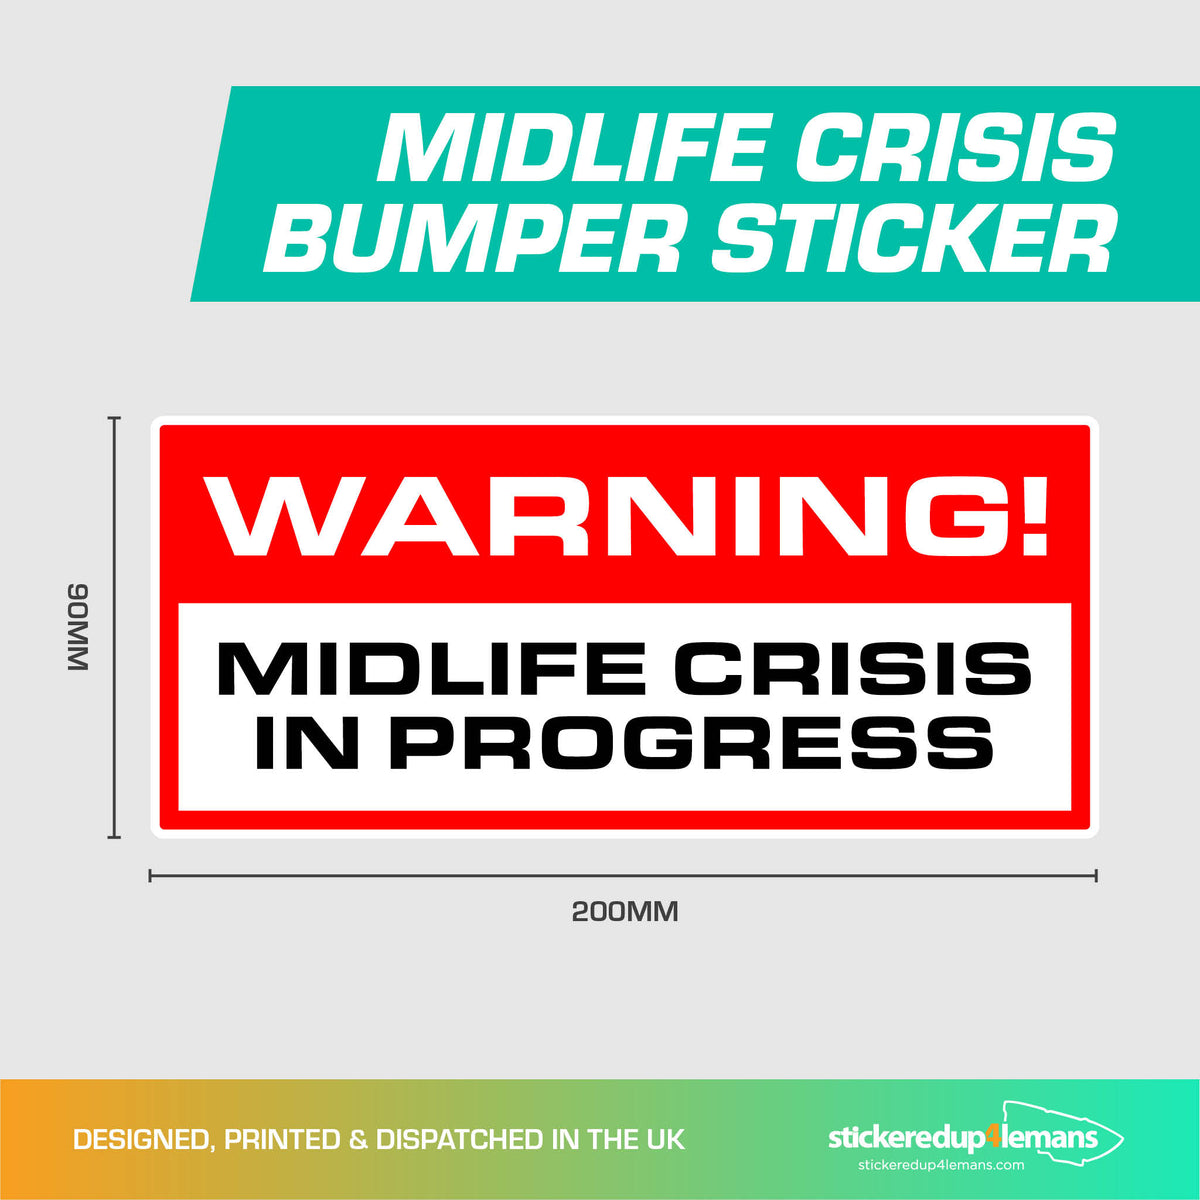 Warning! Midlife Crisis in Progress